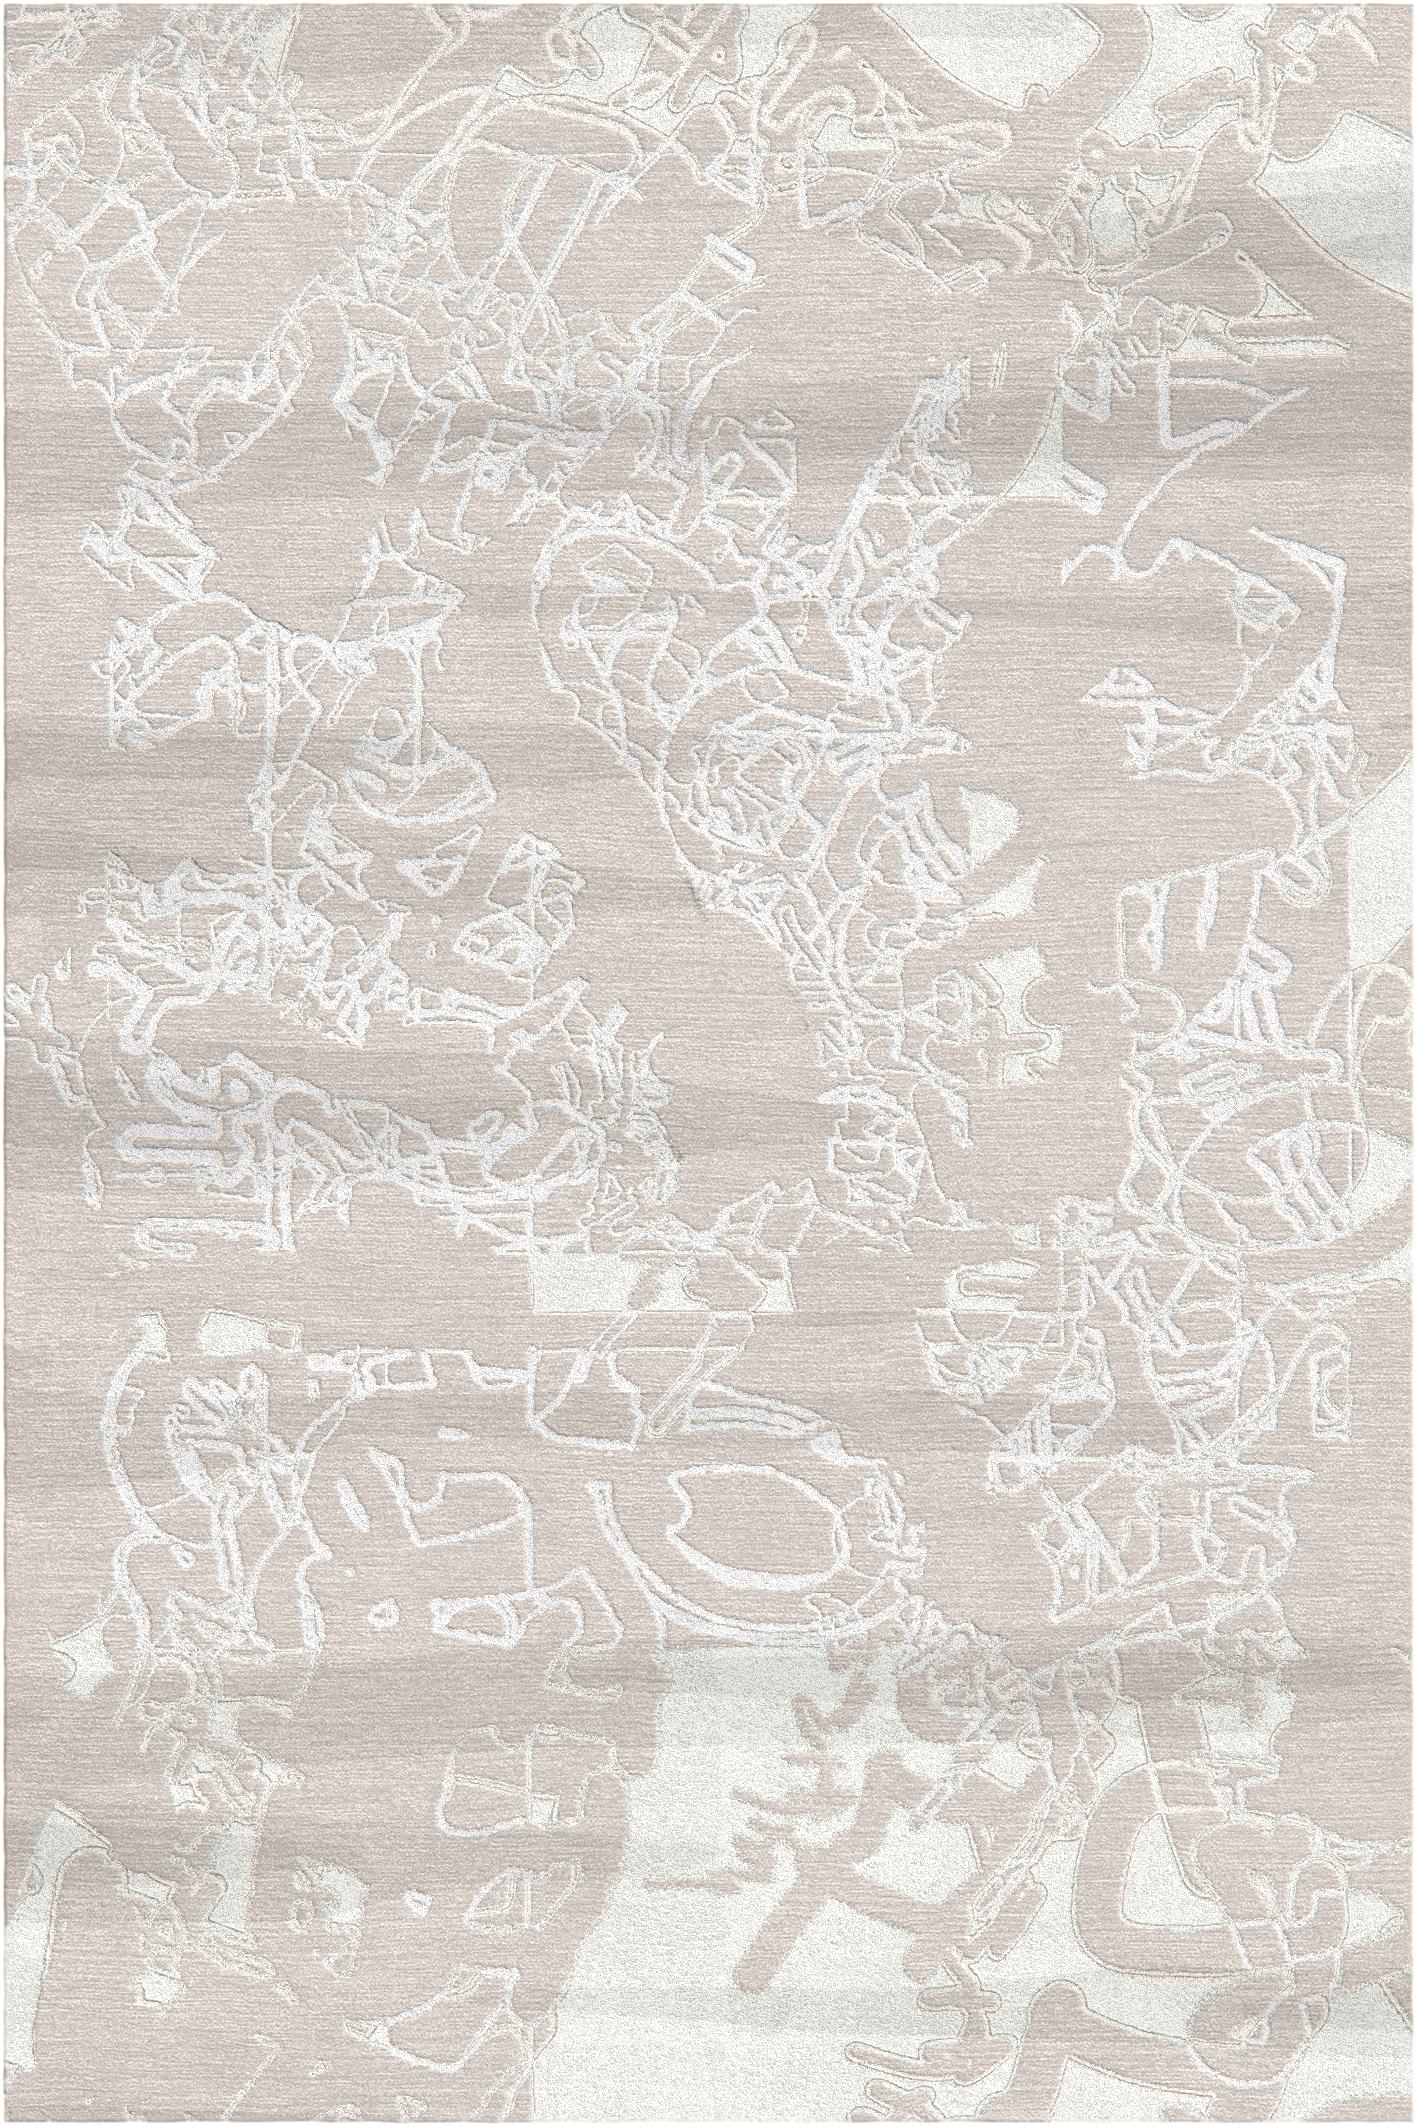 Rosa Frammenti-Teppich von Giulio Brambilla
Abmessungen: D 300 x B 200 x H 1,5 cm
MATERIALIEN: NZ-Wolle, Bambusseide
Erhältlich in anderen Farben. Kundenspezifische Größen und Farben sind ebenfalls erhältlich,

Dieser elegante und raffinierte